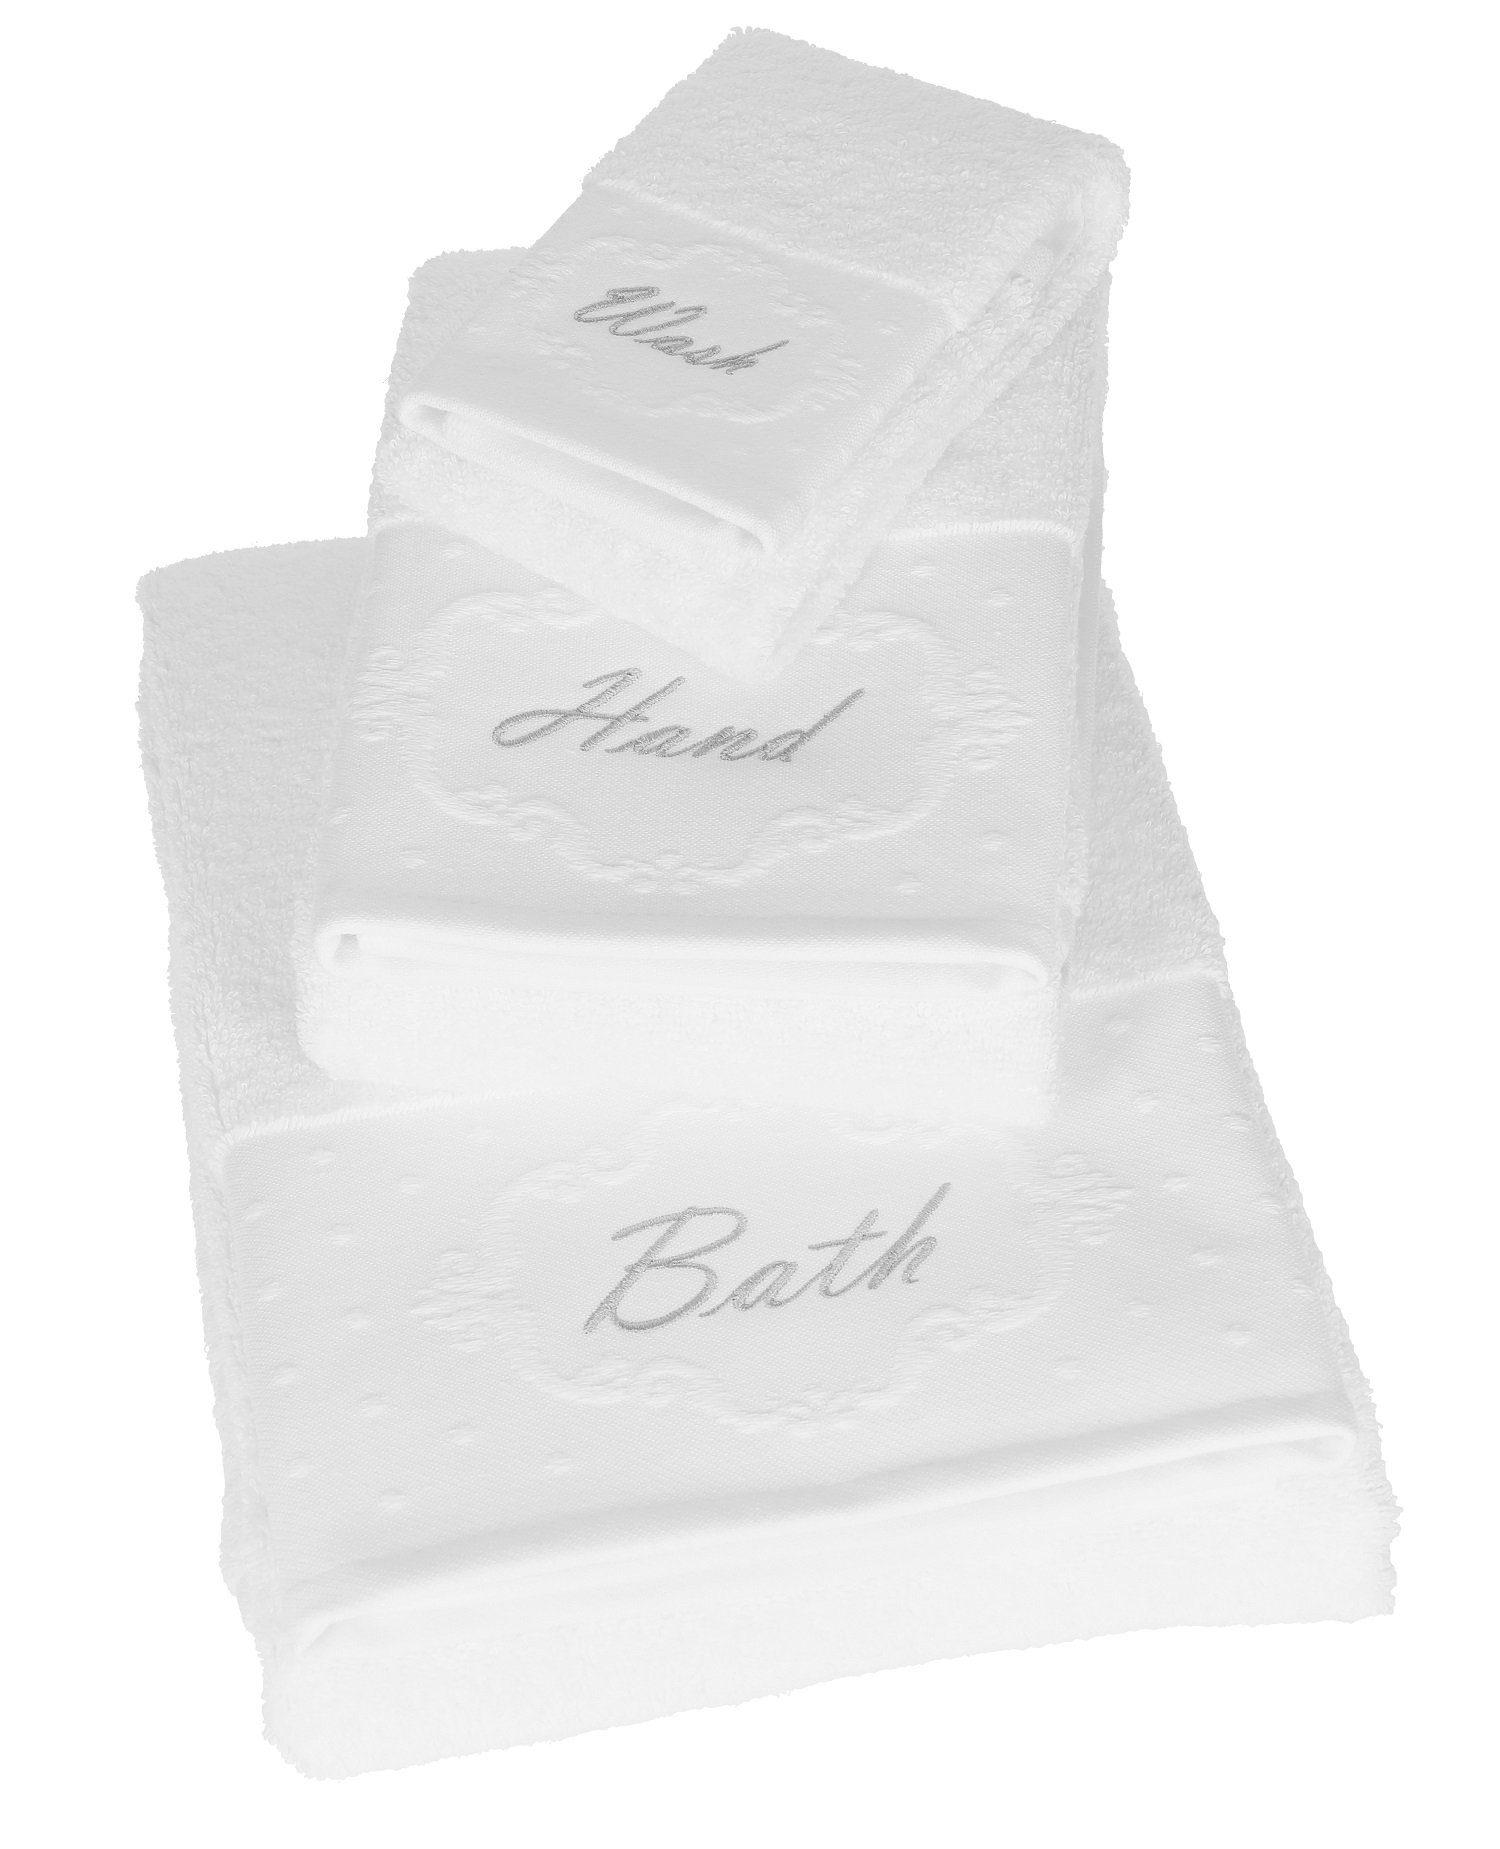 Betz Handtuch Set 3 TLG. Handtücher Set 1 Handtuch 1 Gästetuch 1 Liegetuch 100% Baumwolle, 100% Baumwolle weiß BATH